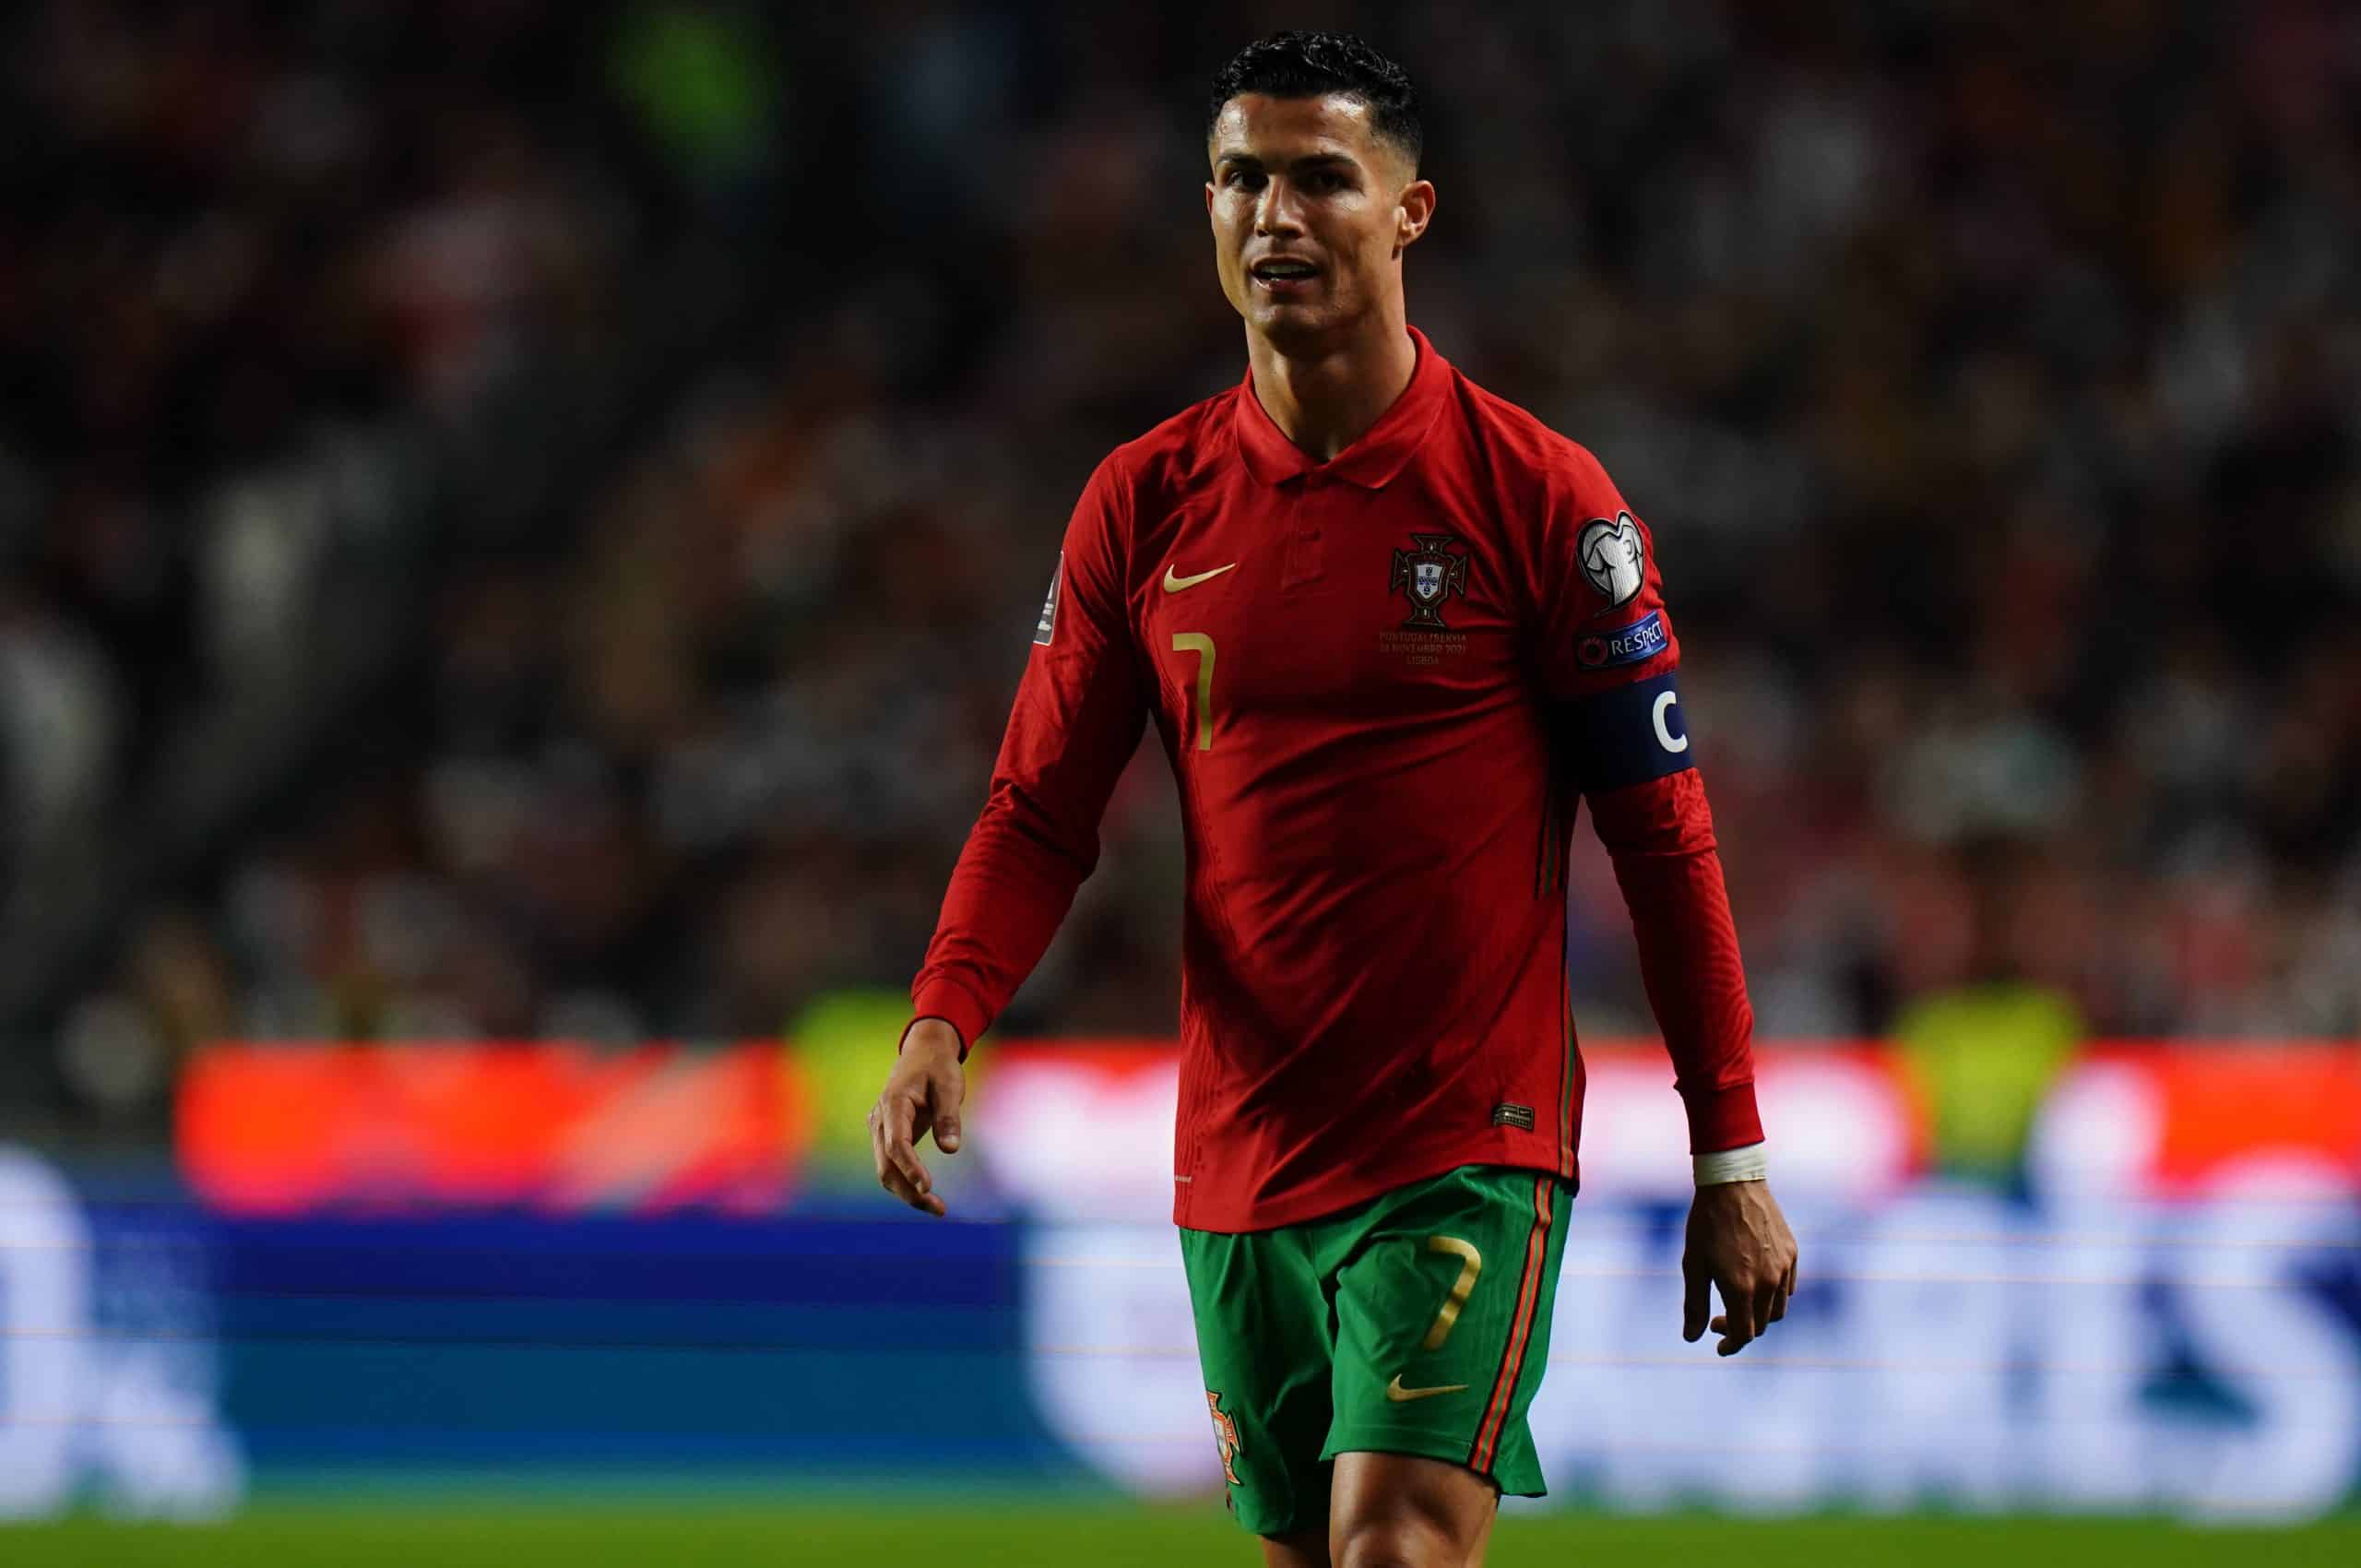 La madre di Ronaldo è stata portata alle lacrime dall’ultima dedica al gol della stella del Portogallo